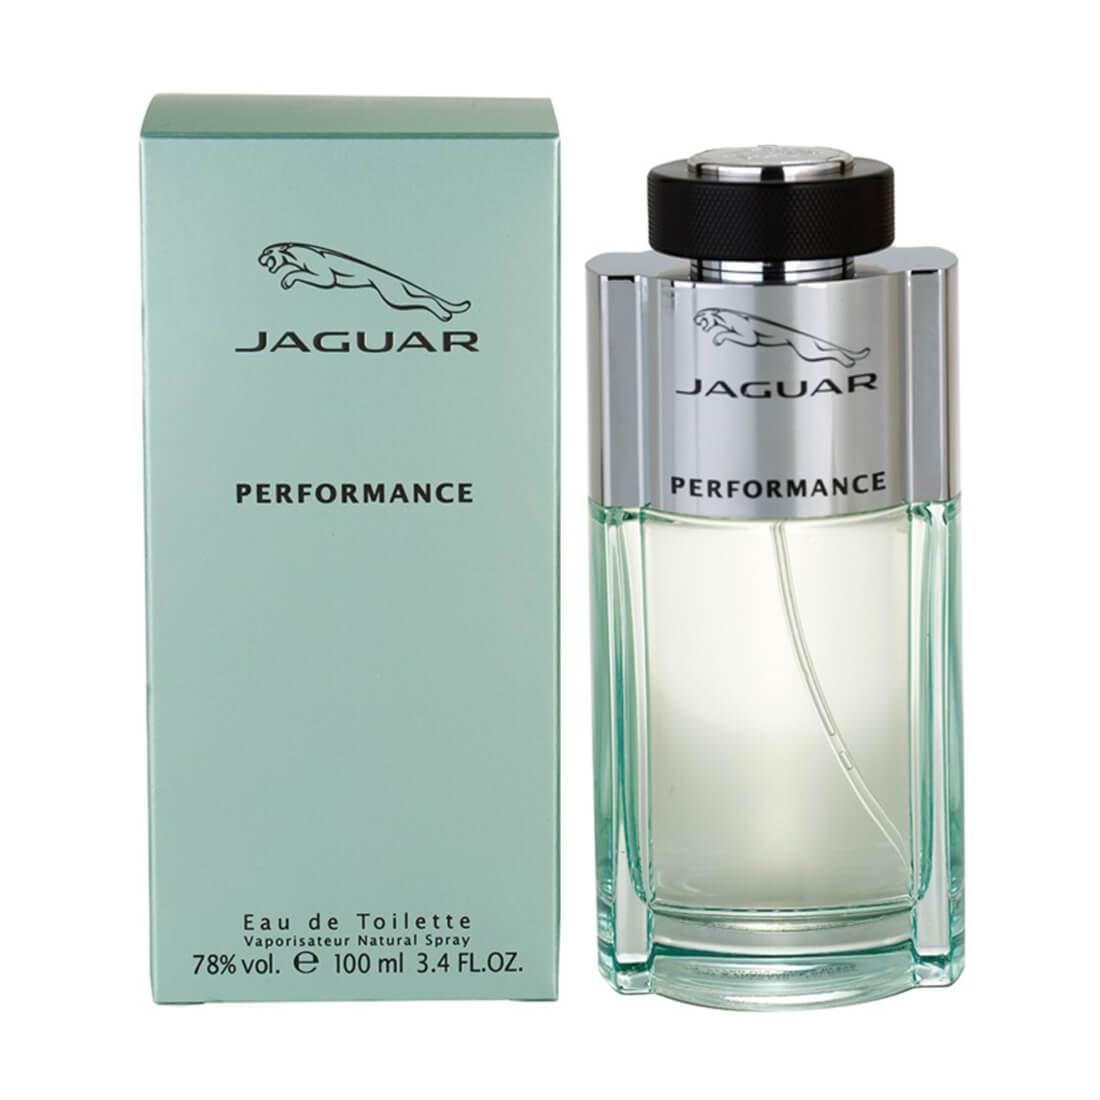 Jaguar Performance Eau de Toilette Perfume For Men